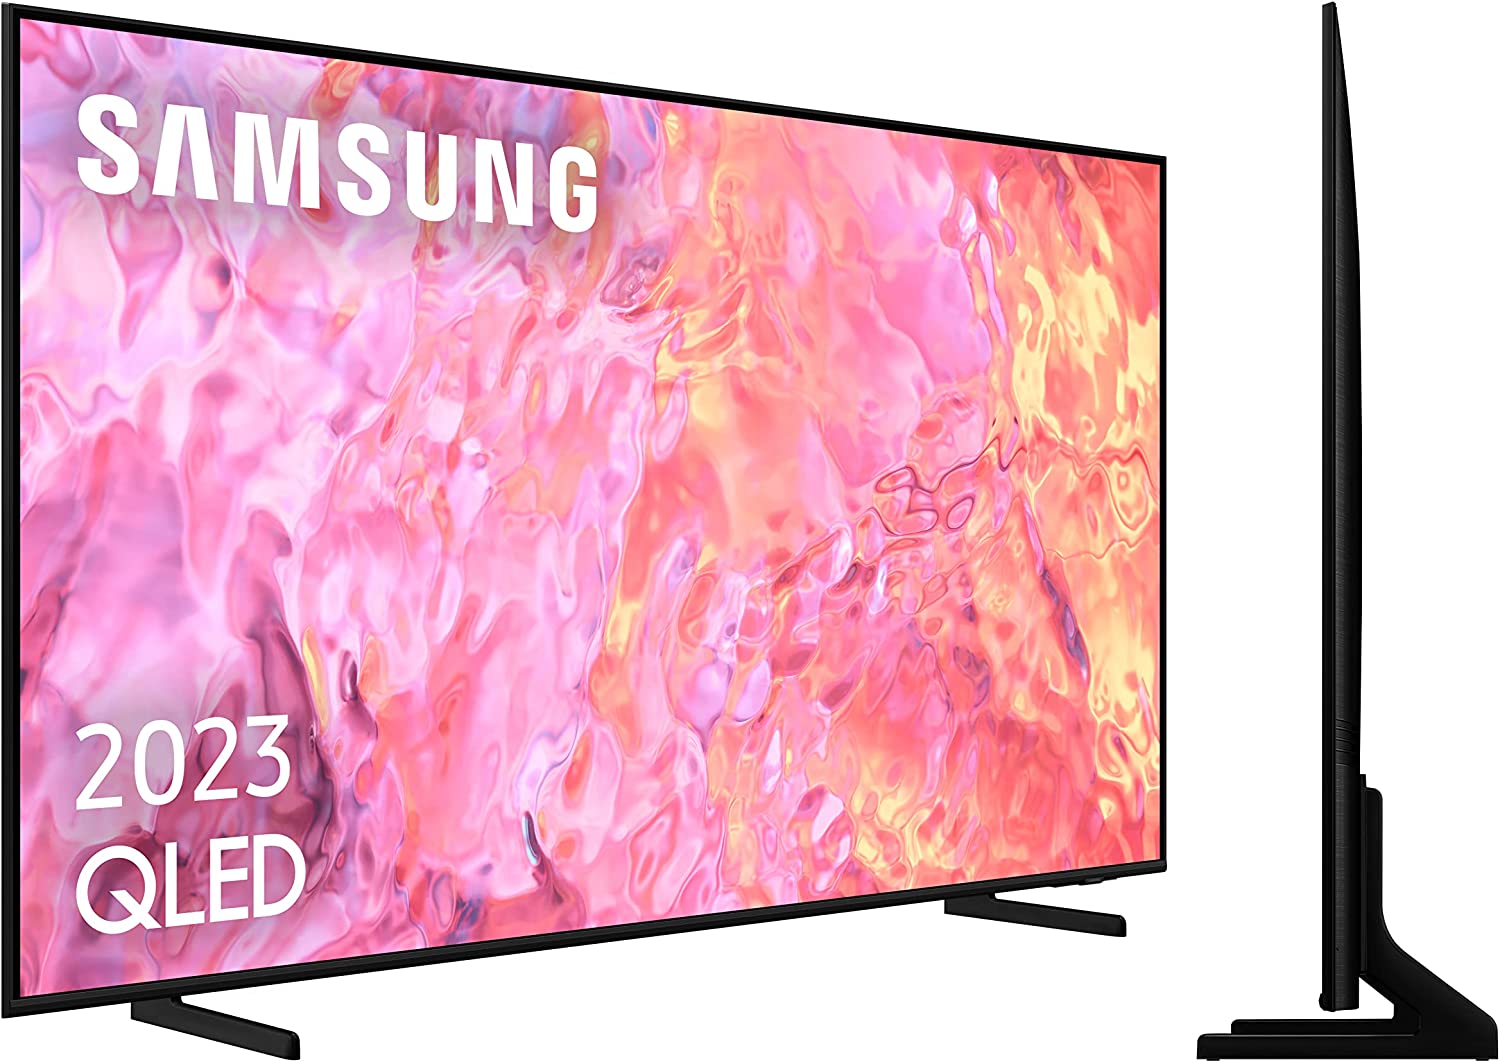 Samsung TV QLED 2023 43Q60C